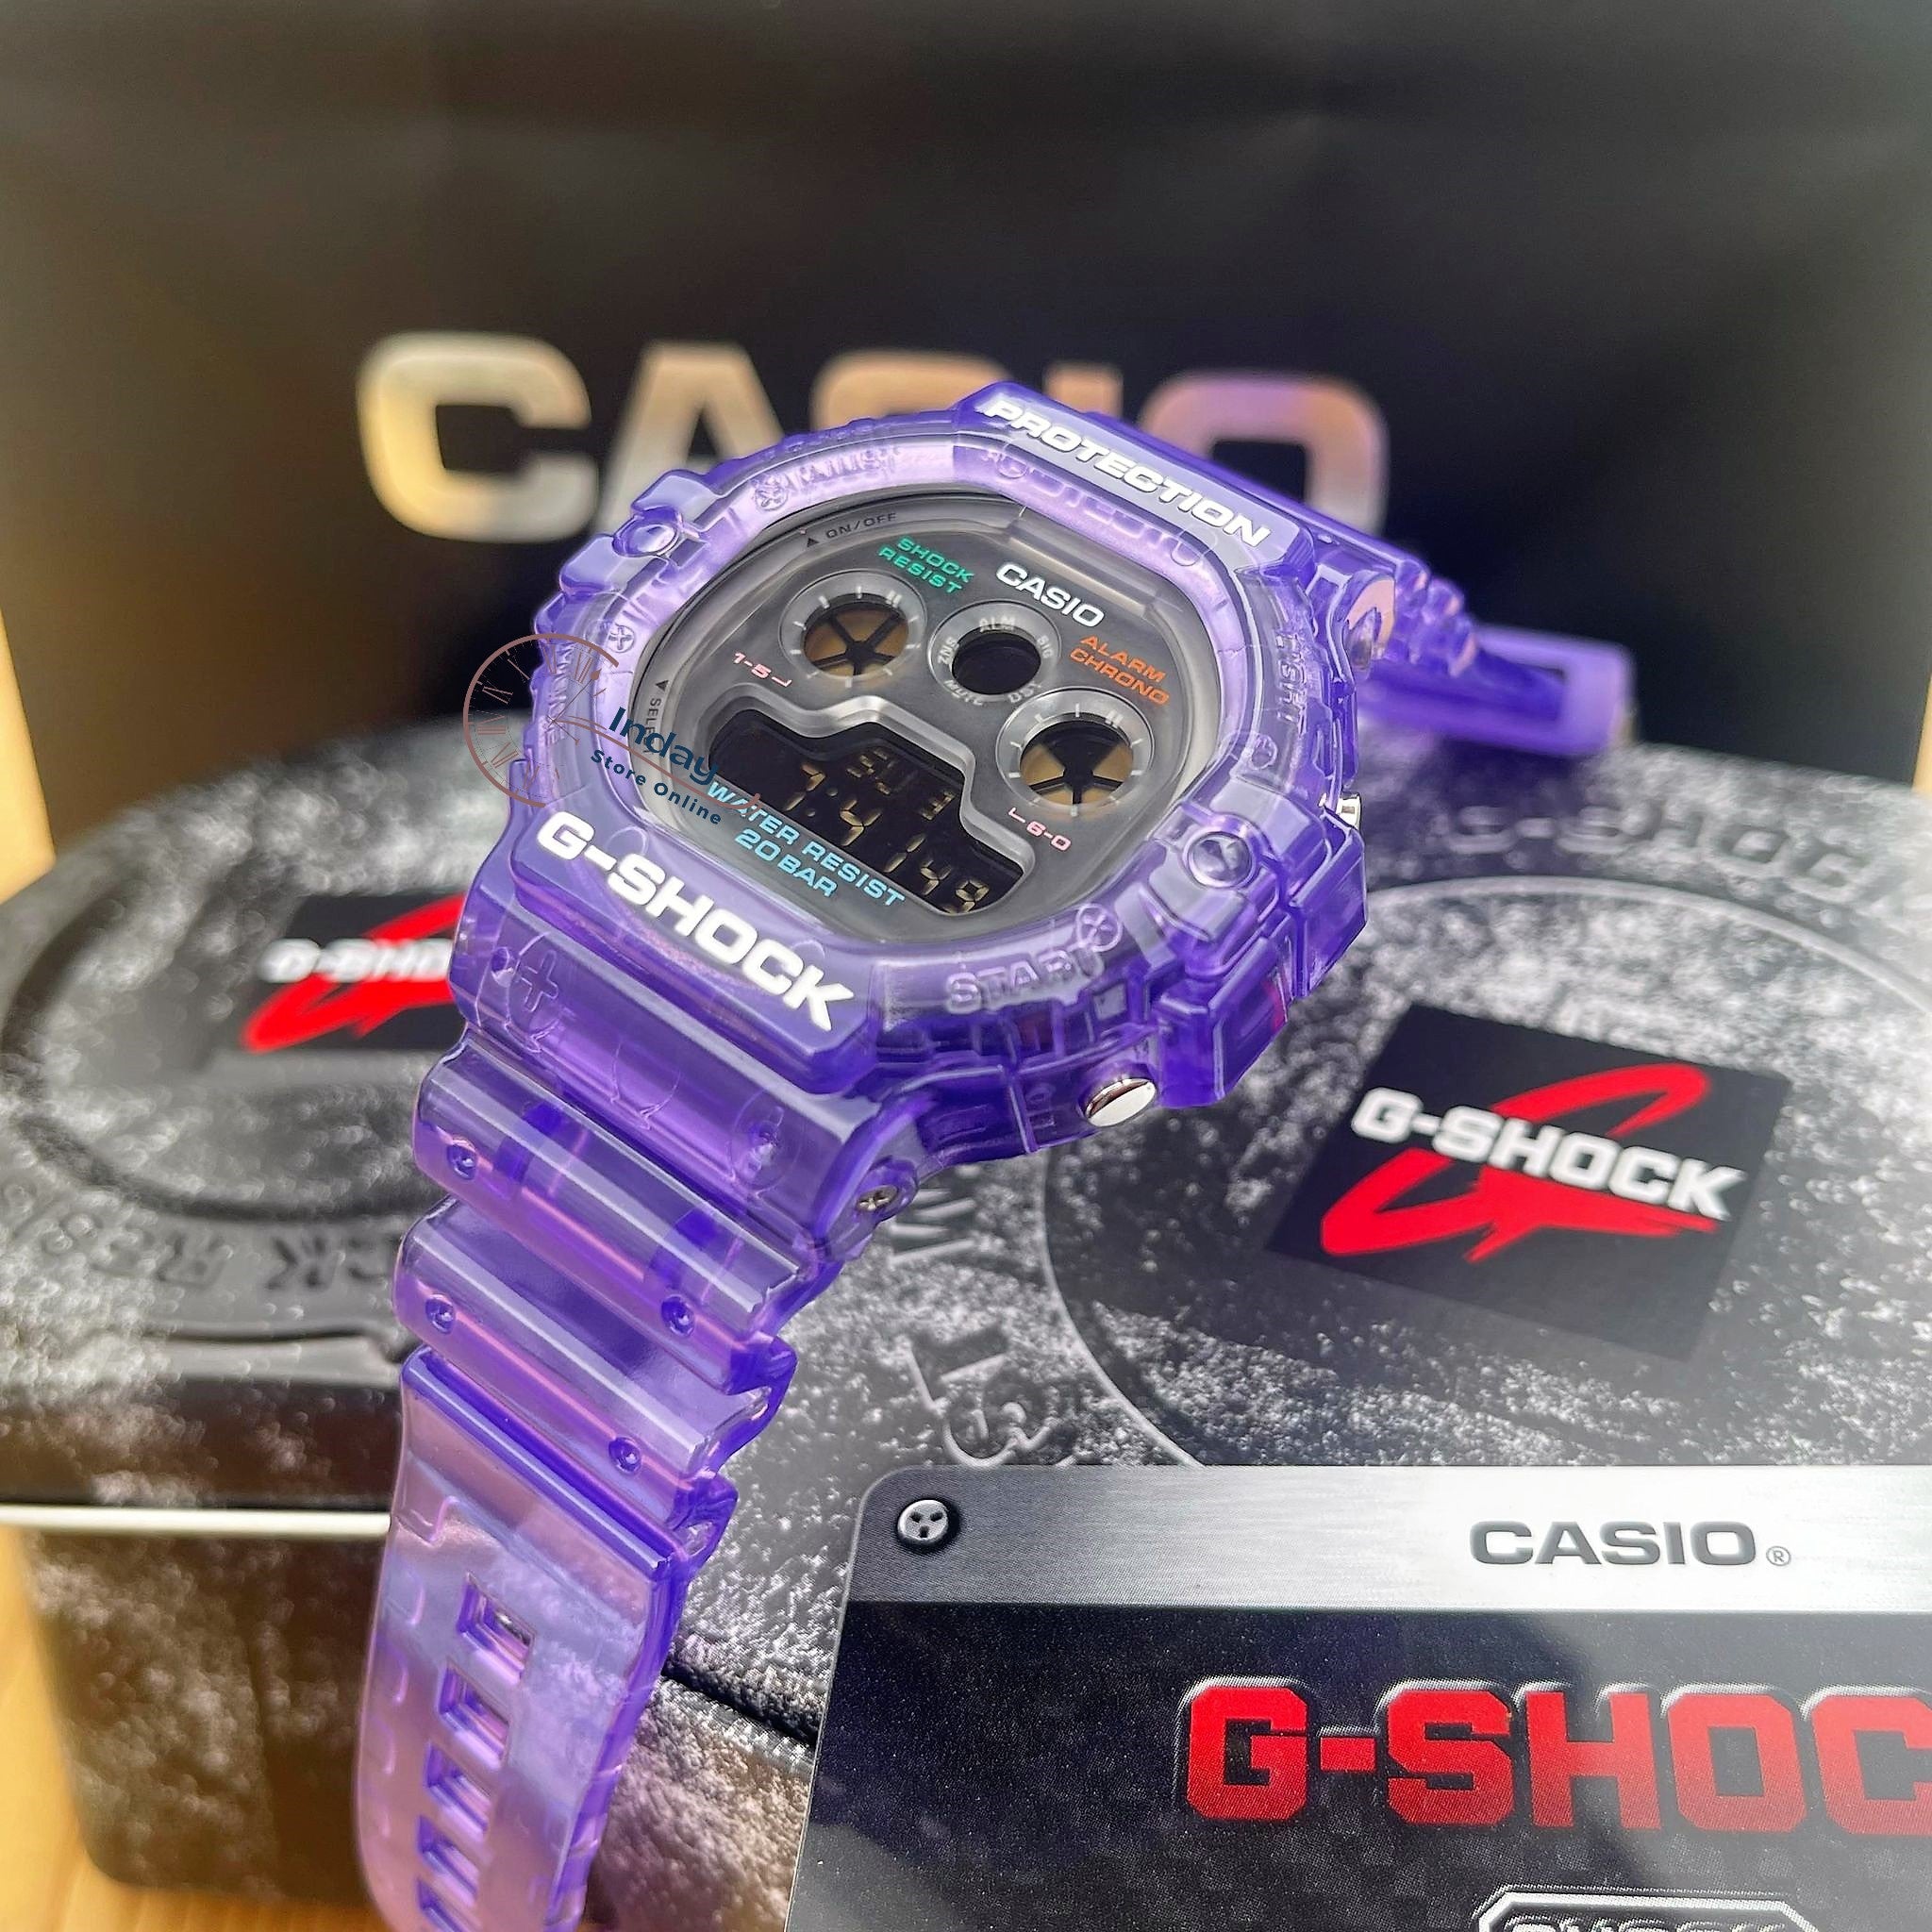 Casio G-Shock Men's Watch DW-5900JT-6 Digital 5900 Series Retro